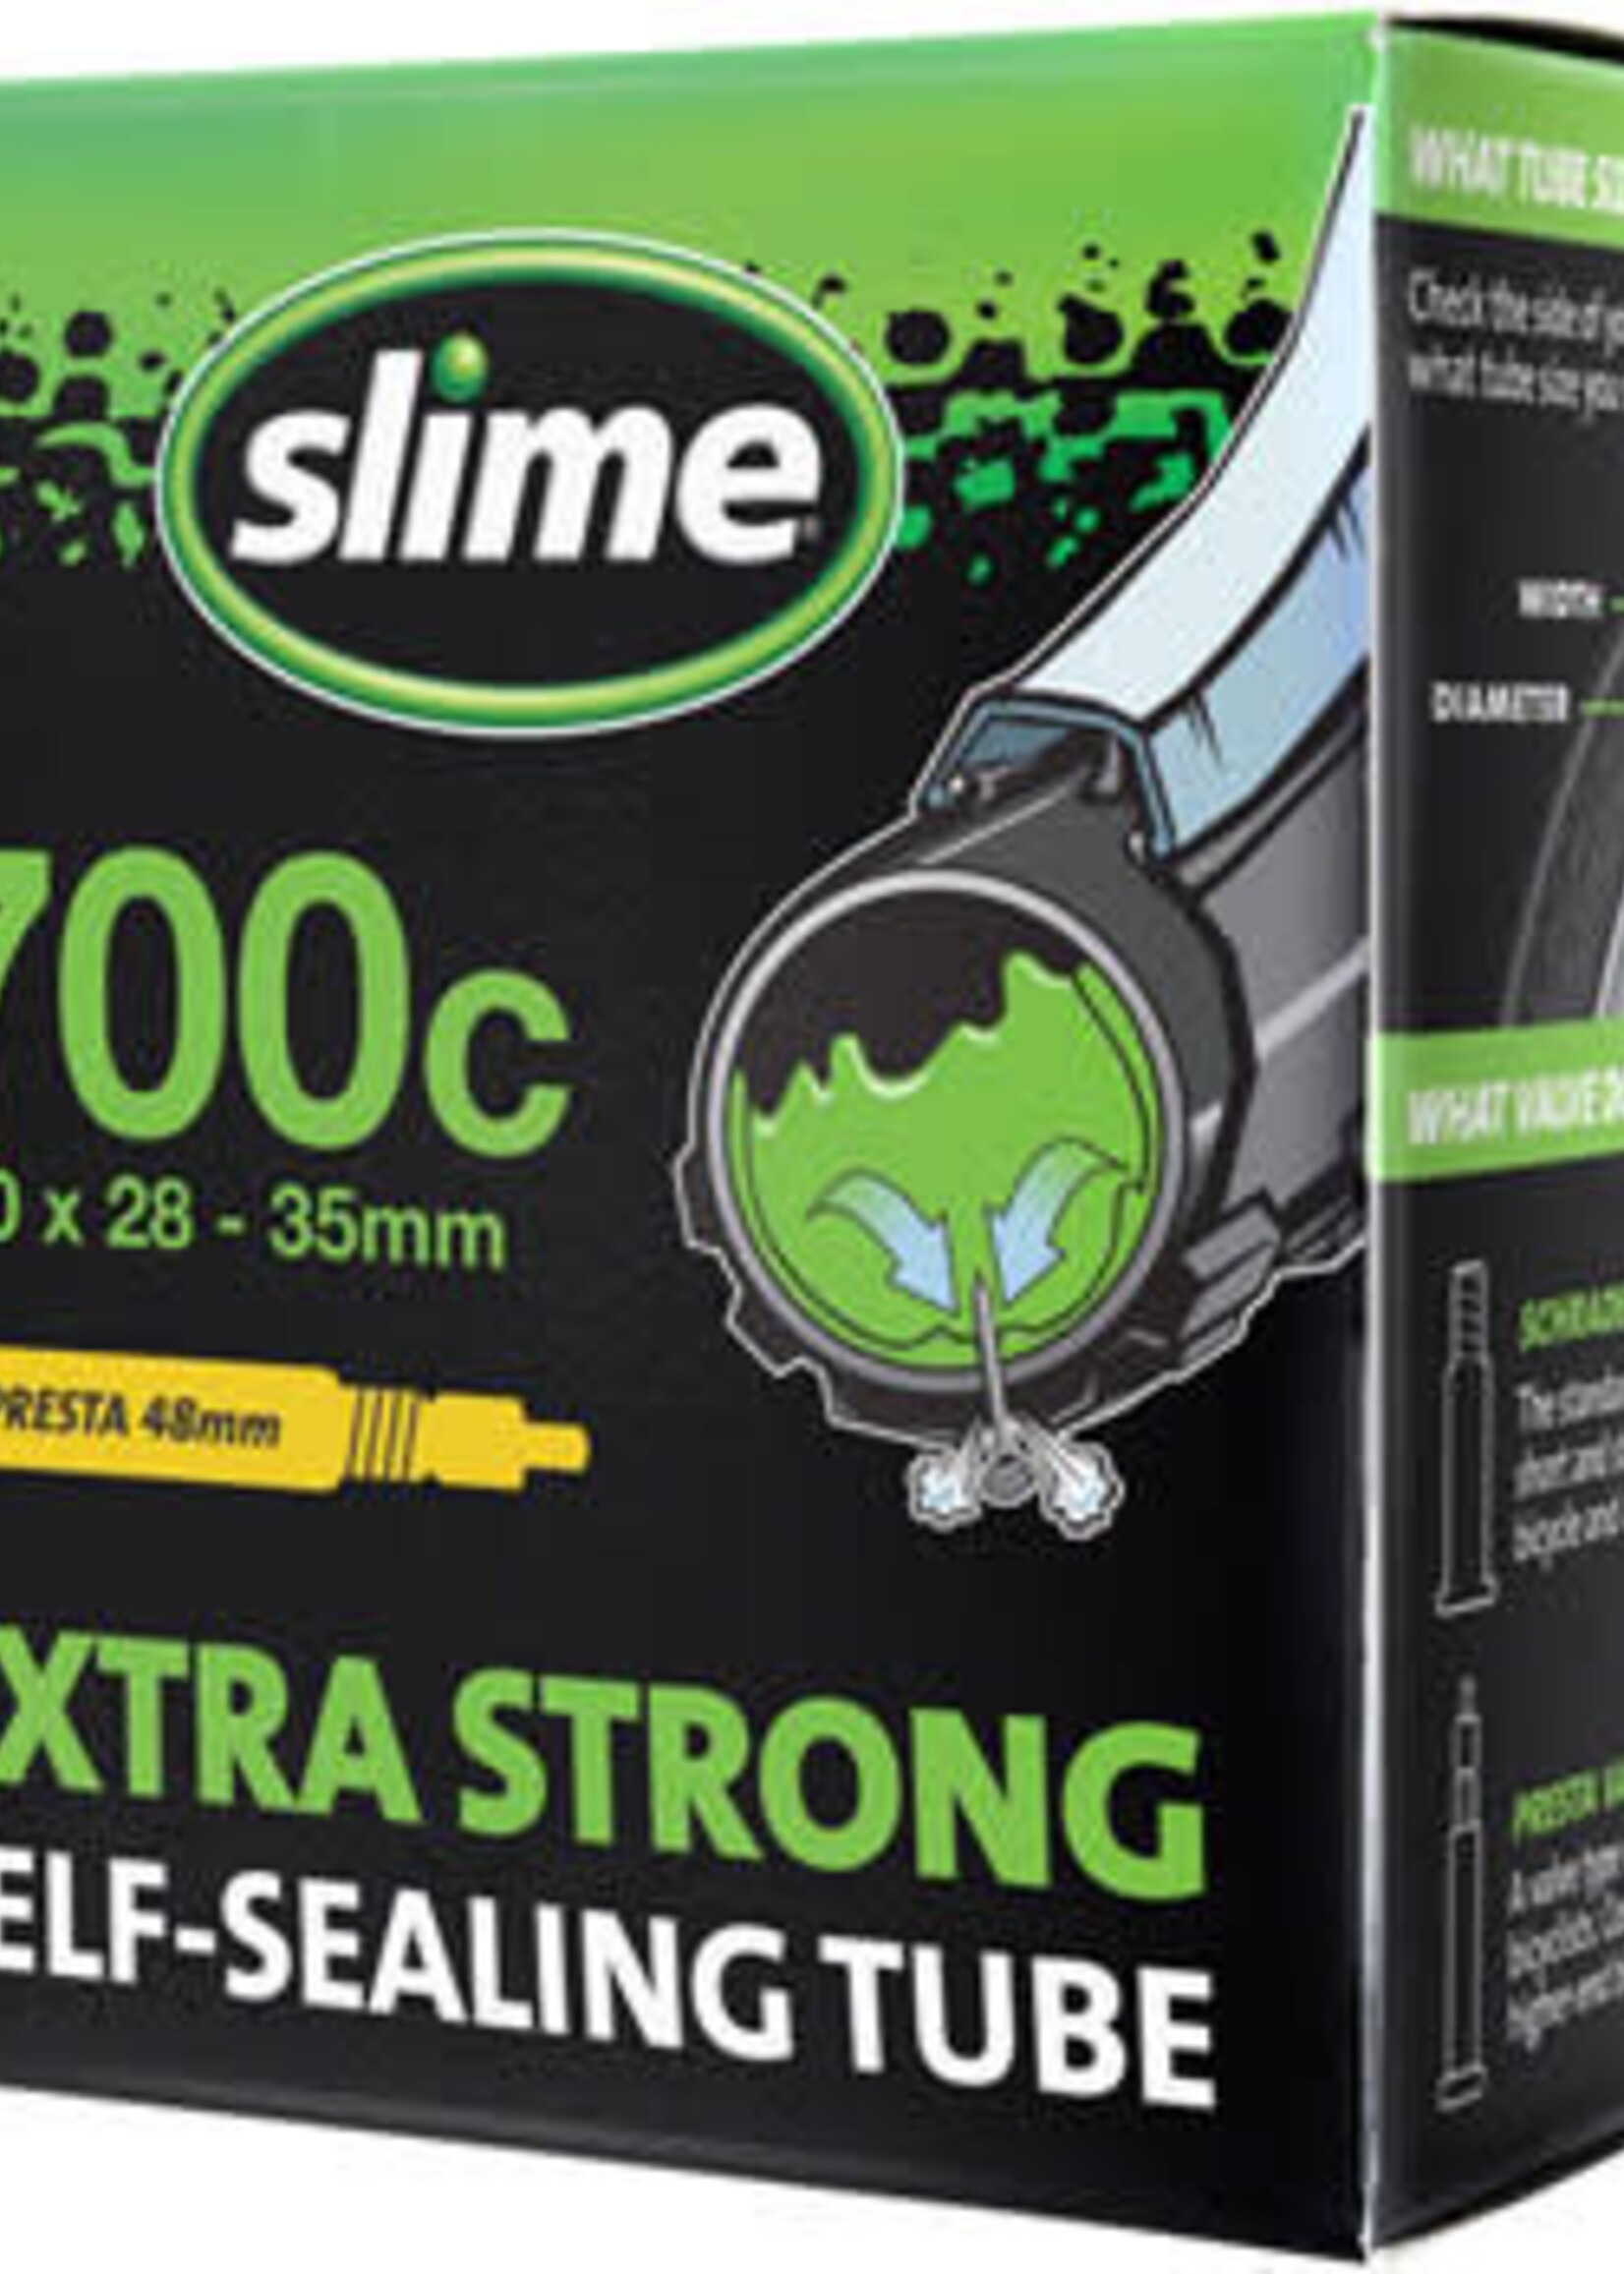 SLIME Slime Self-Sealing Tube 700c x 28mm-35mm, 48mm Presta Valve